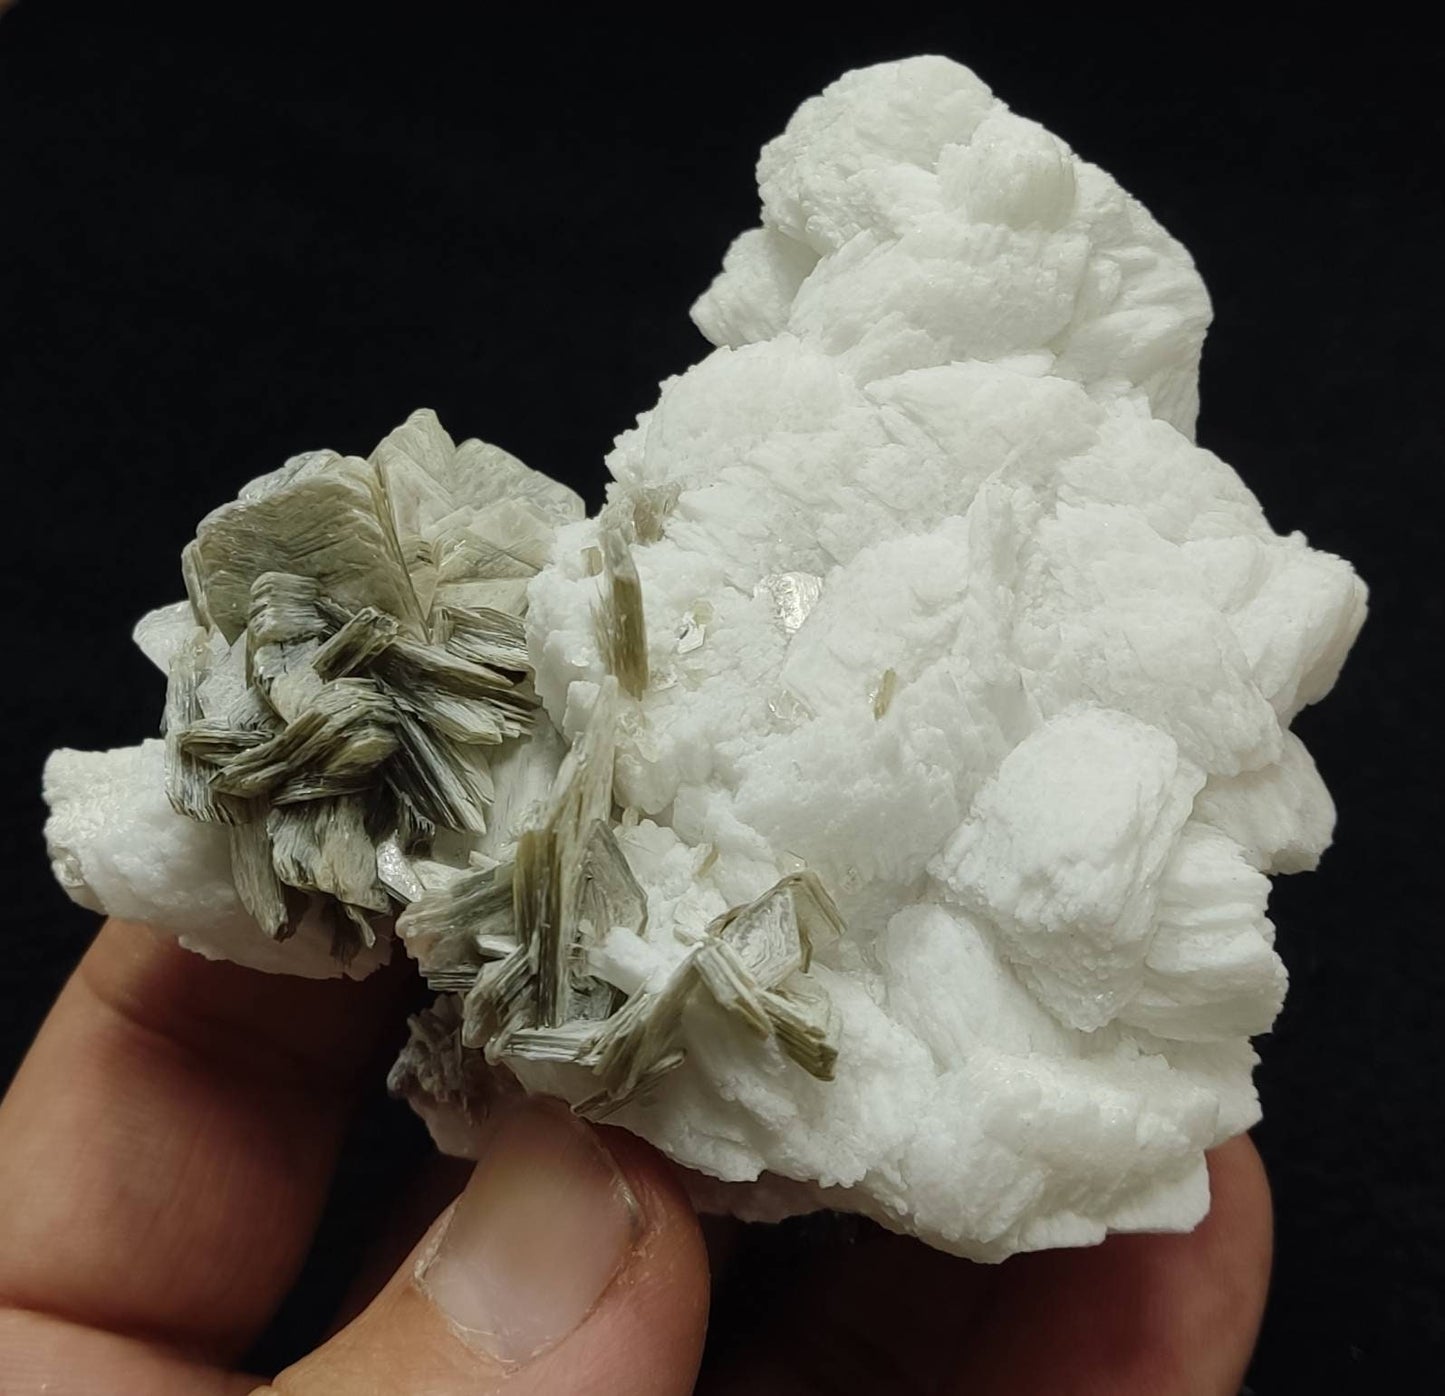 Combo Specimen of black tourmaline, muscovite, with albite/feldspar 262 grams